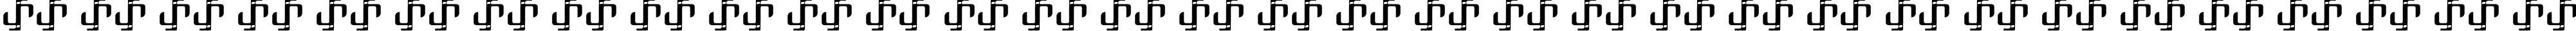 Пример написания русского алфавита шрифтом One-Eighty Regular